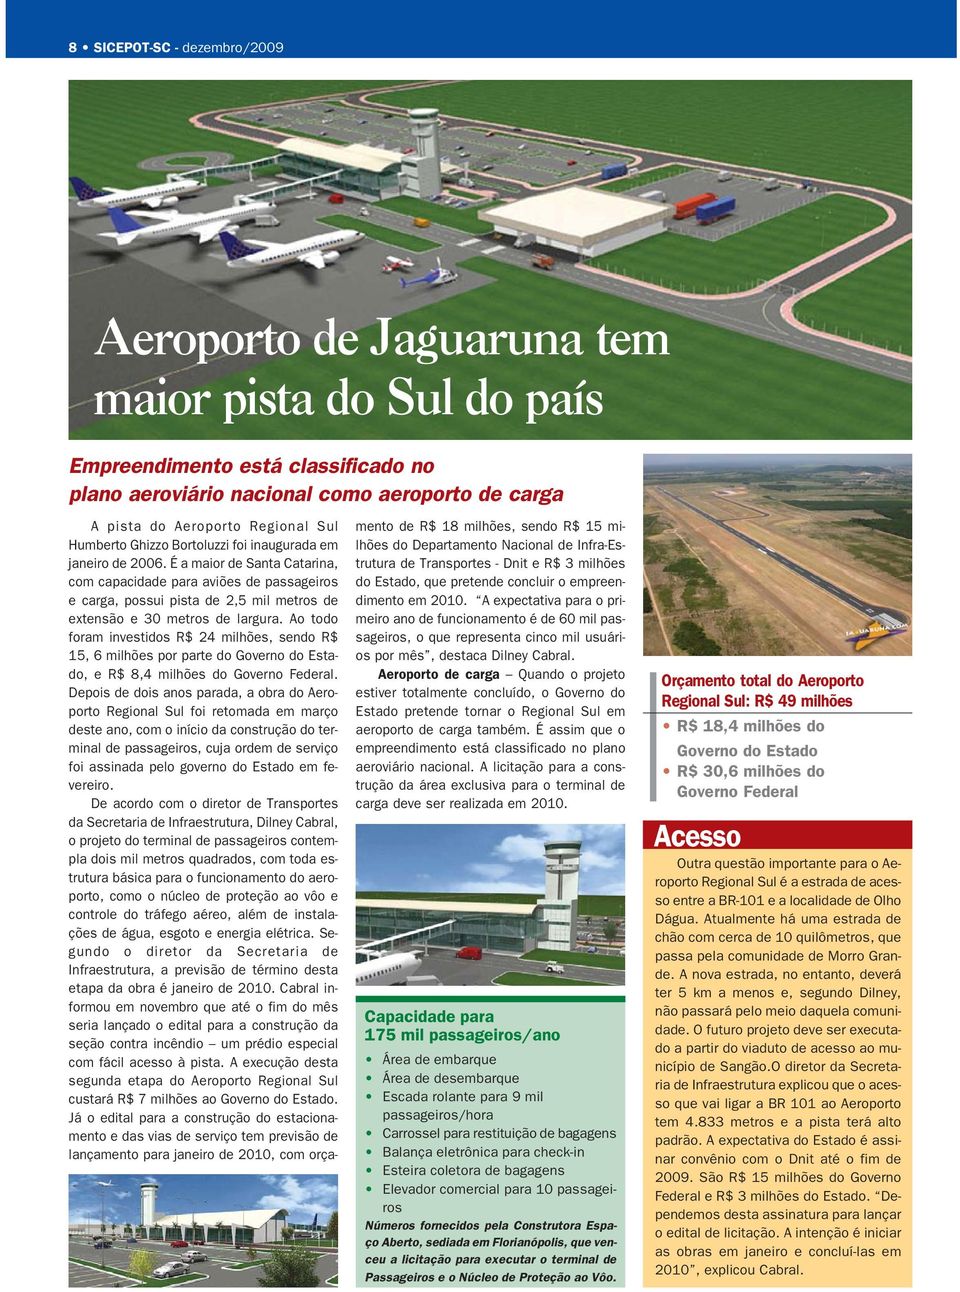 É a maior de Santa Catarina, com capacidade para aviões de passageiros e carga, possui pista de 2,5 mil metros de extensão e 30 metros de largura.